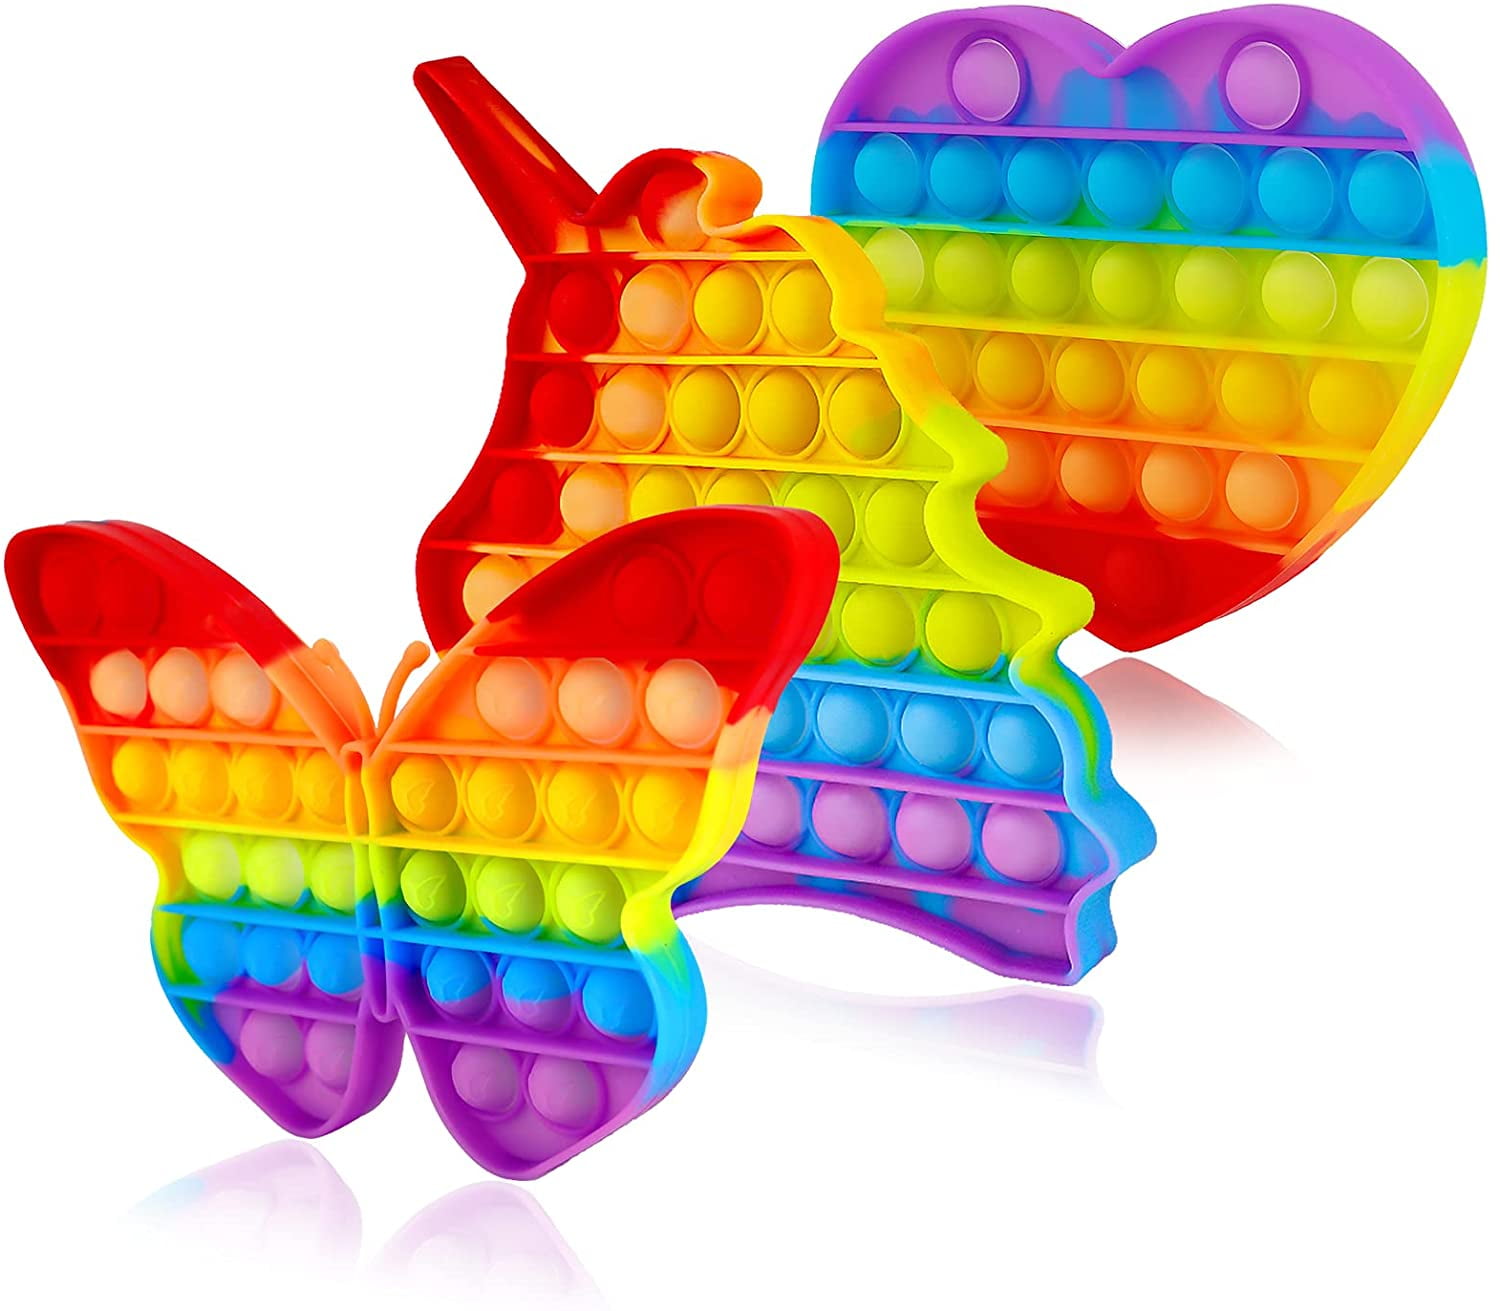 Details about   Bubble Pop Fidget Sensory Toy For Autism Special Needs Silent Classroom Free P&P 